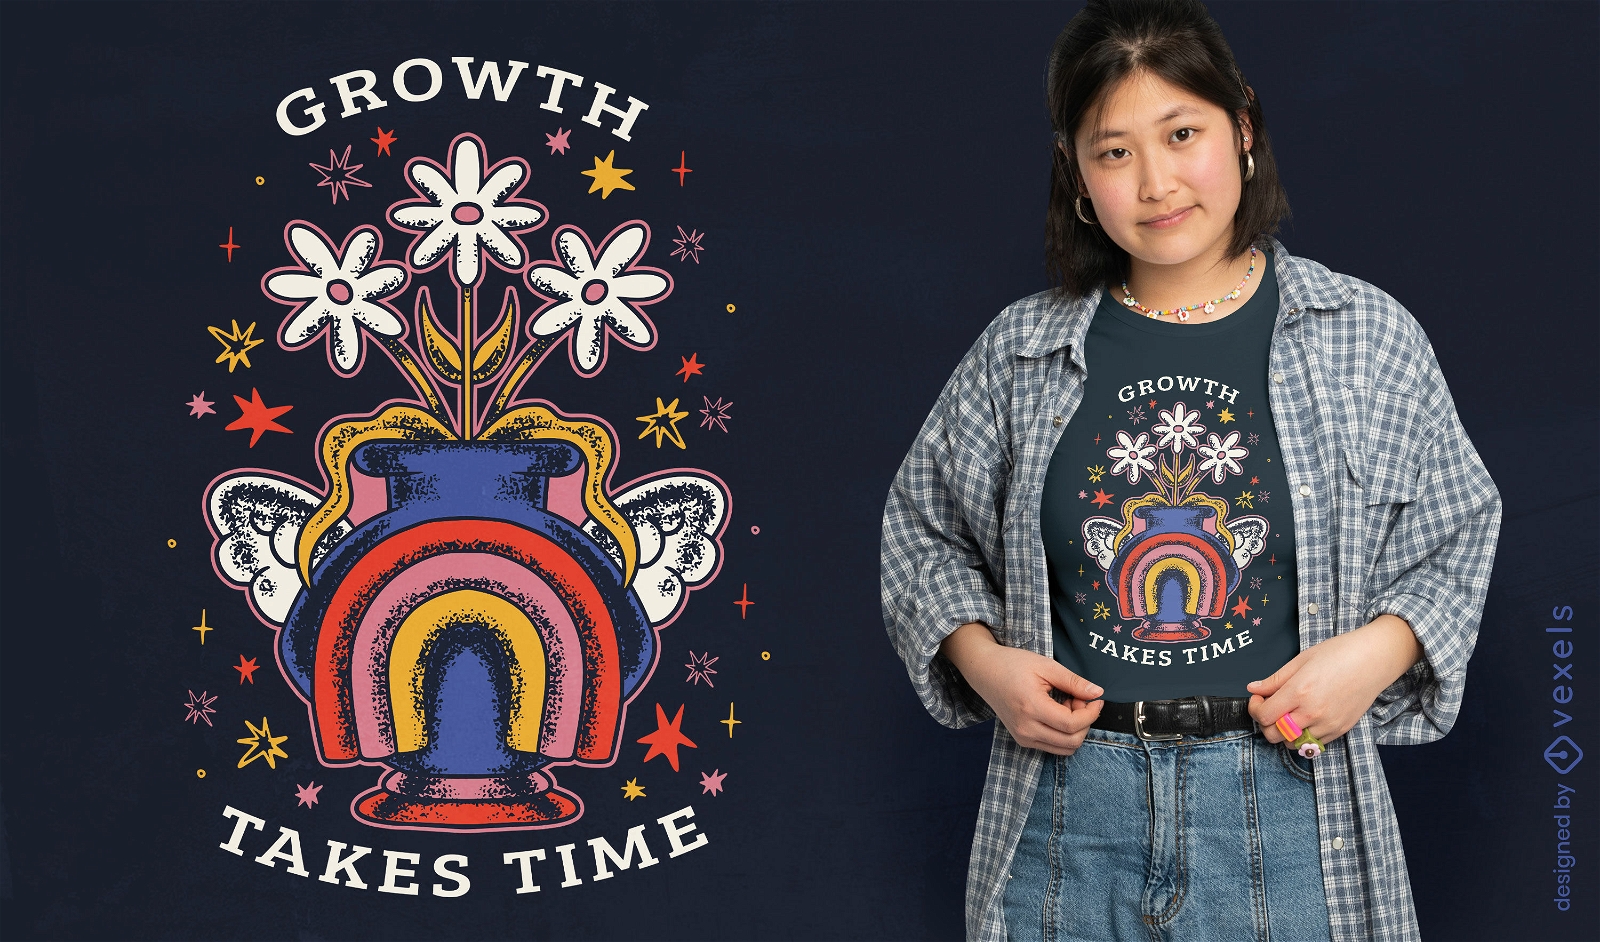 El crecimiento lleva tiempo dise?o de camiseta floral.